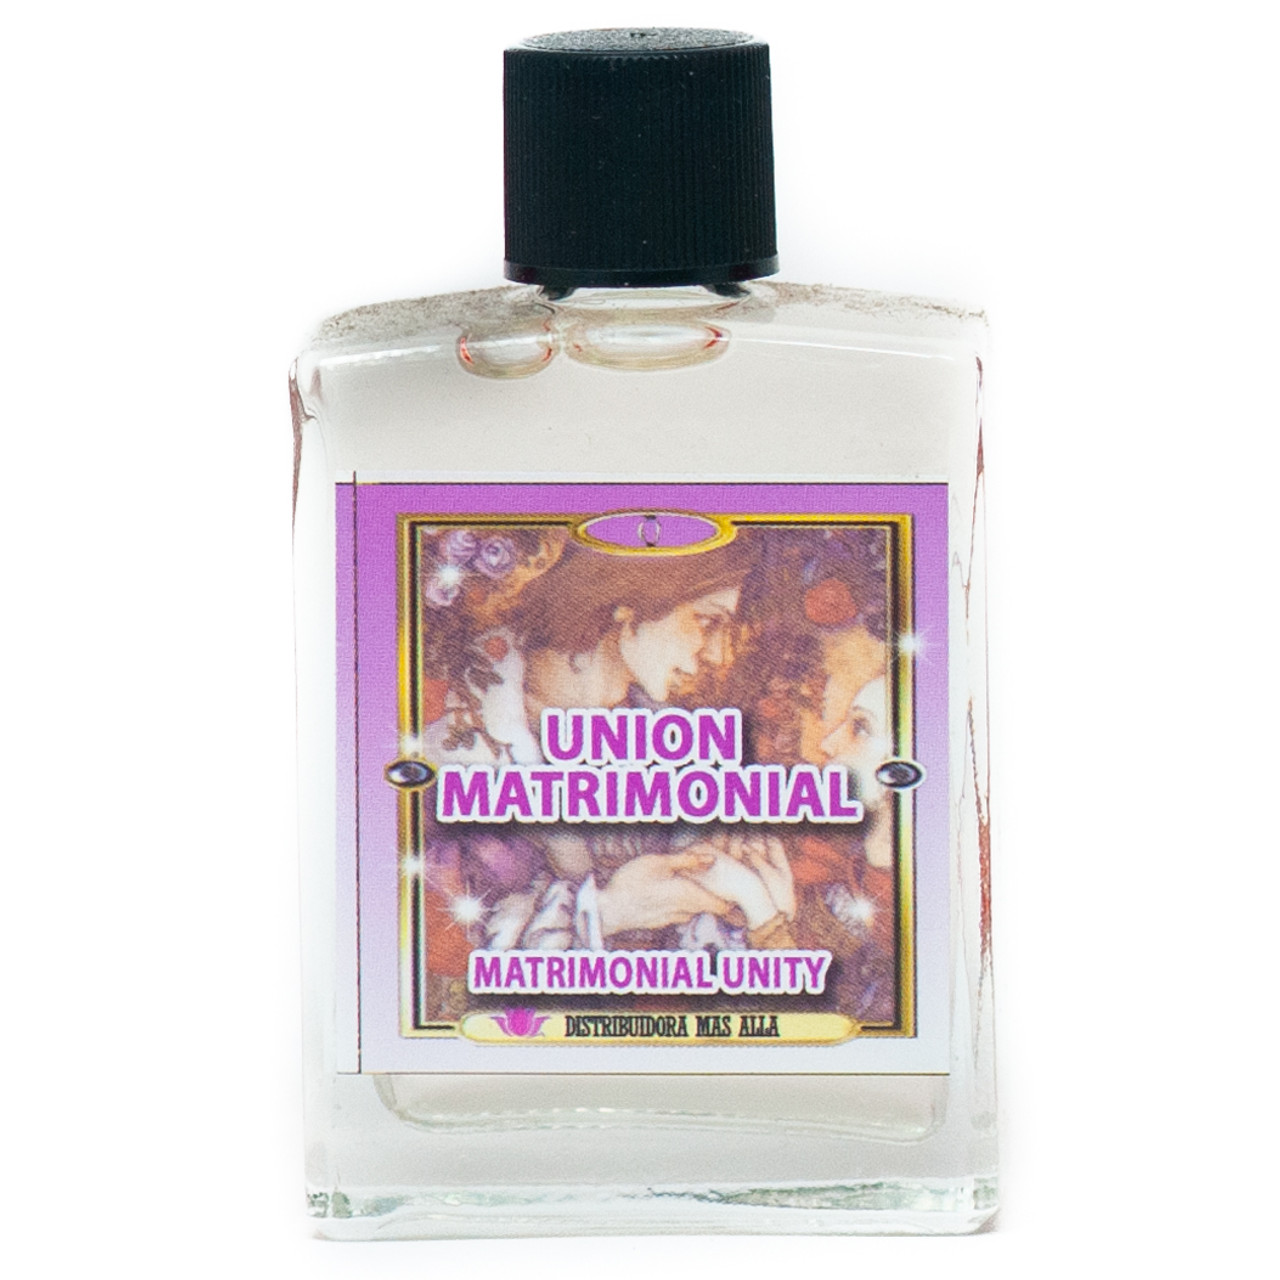 Perfume Union Matrimonial